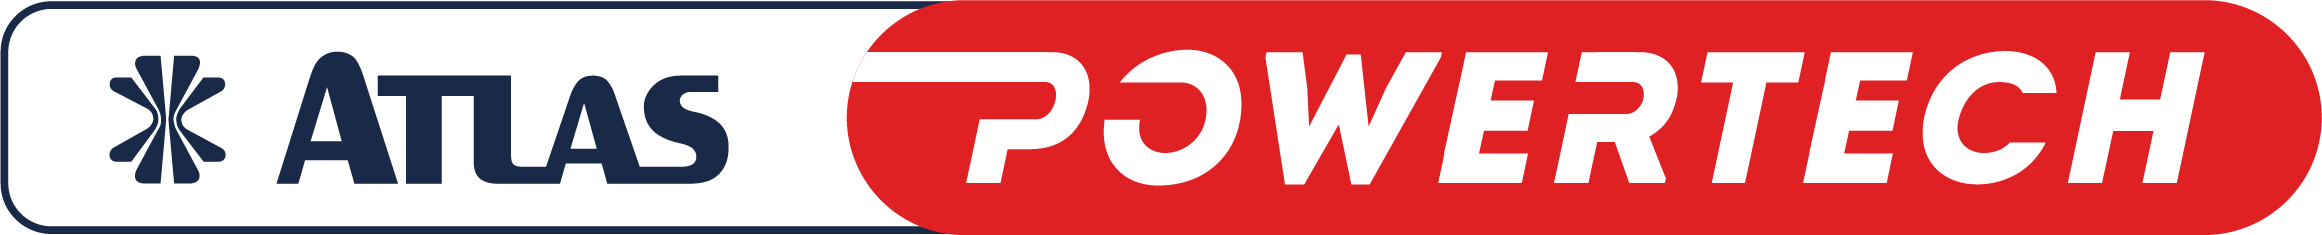 logo_powertechblue